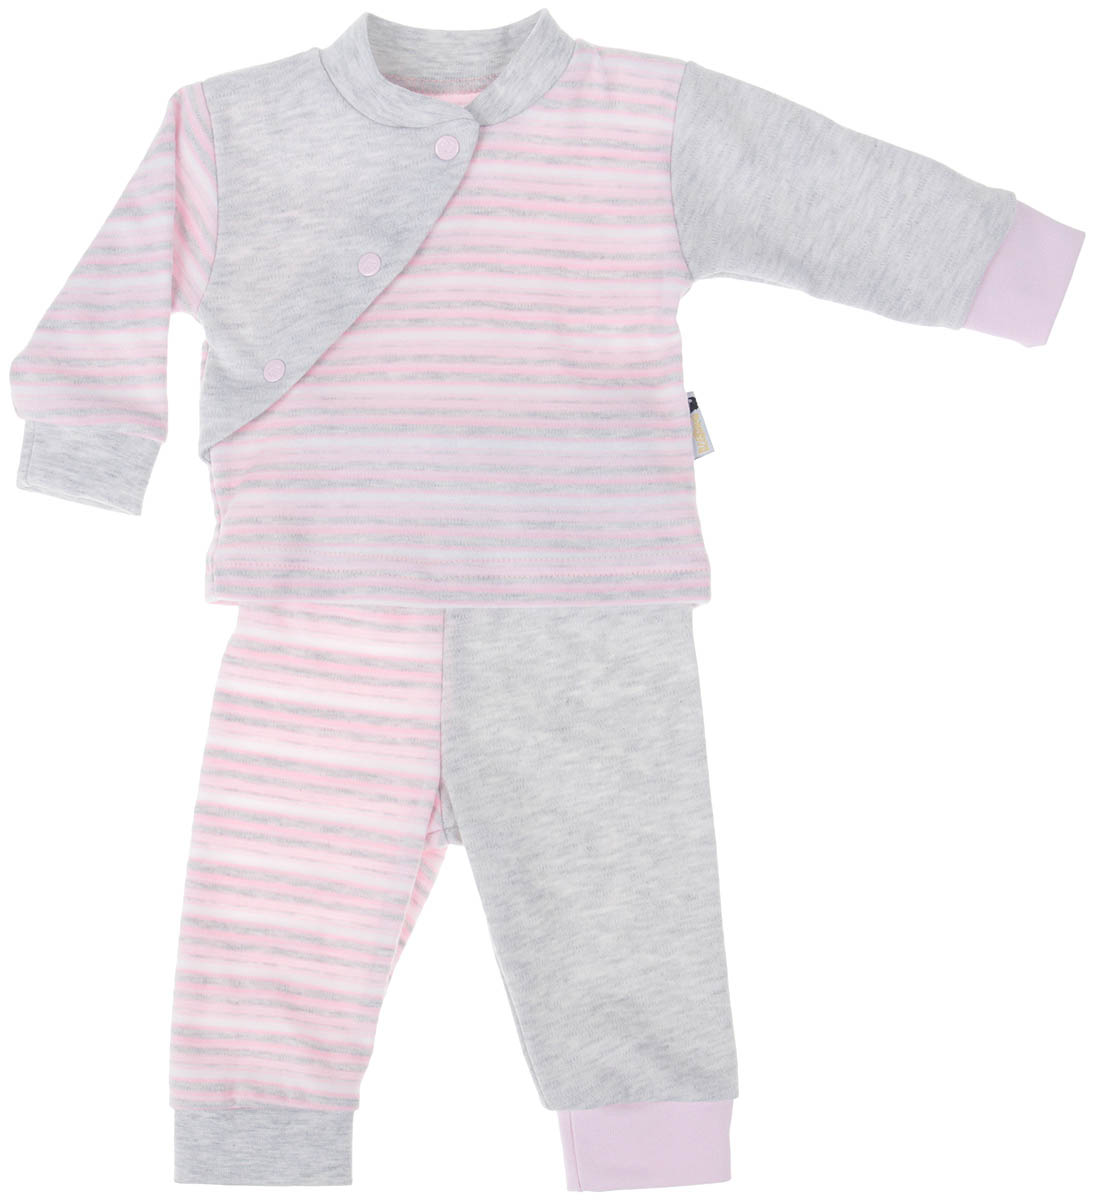 Комплект детский Клякса: кофточка, брюки, цвет: розовый, светло-серый, белый. 39К-5222. Размер 62